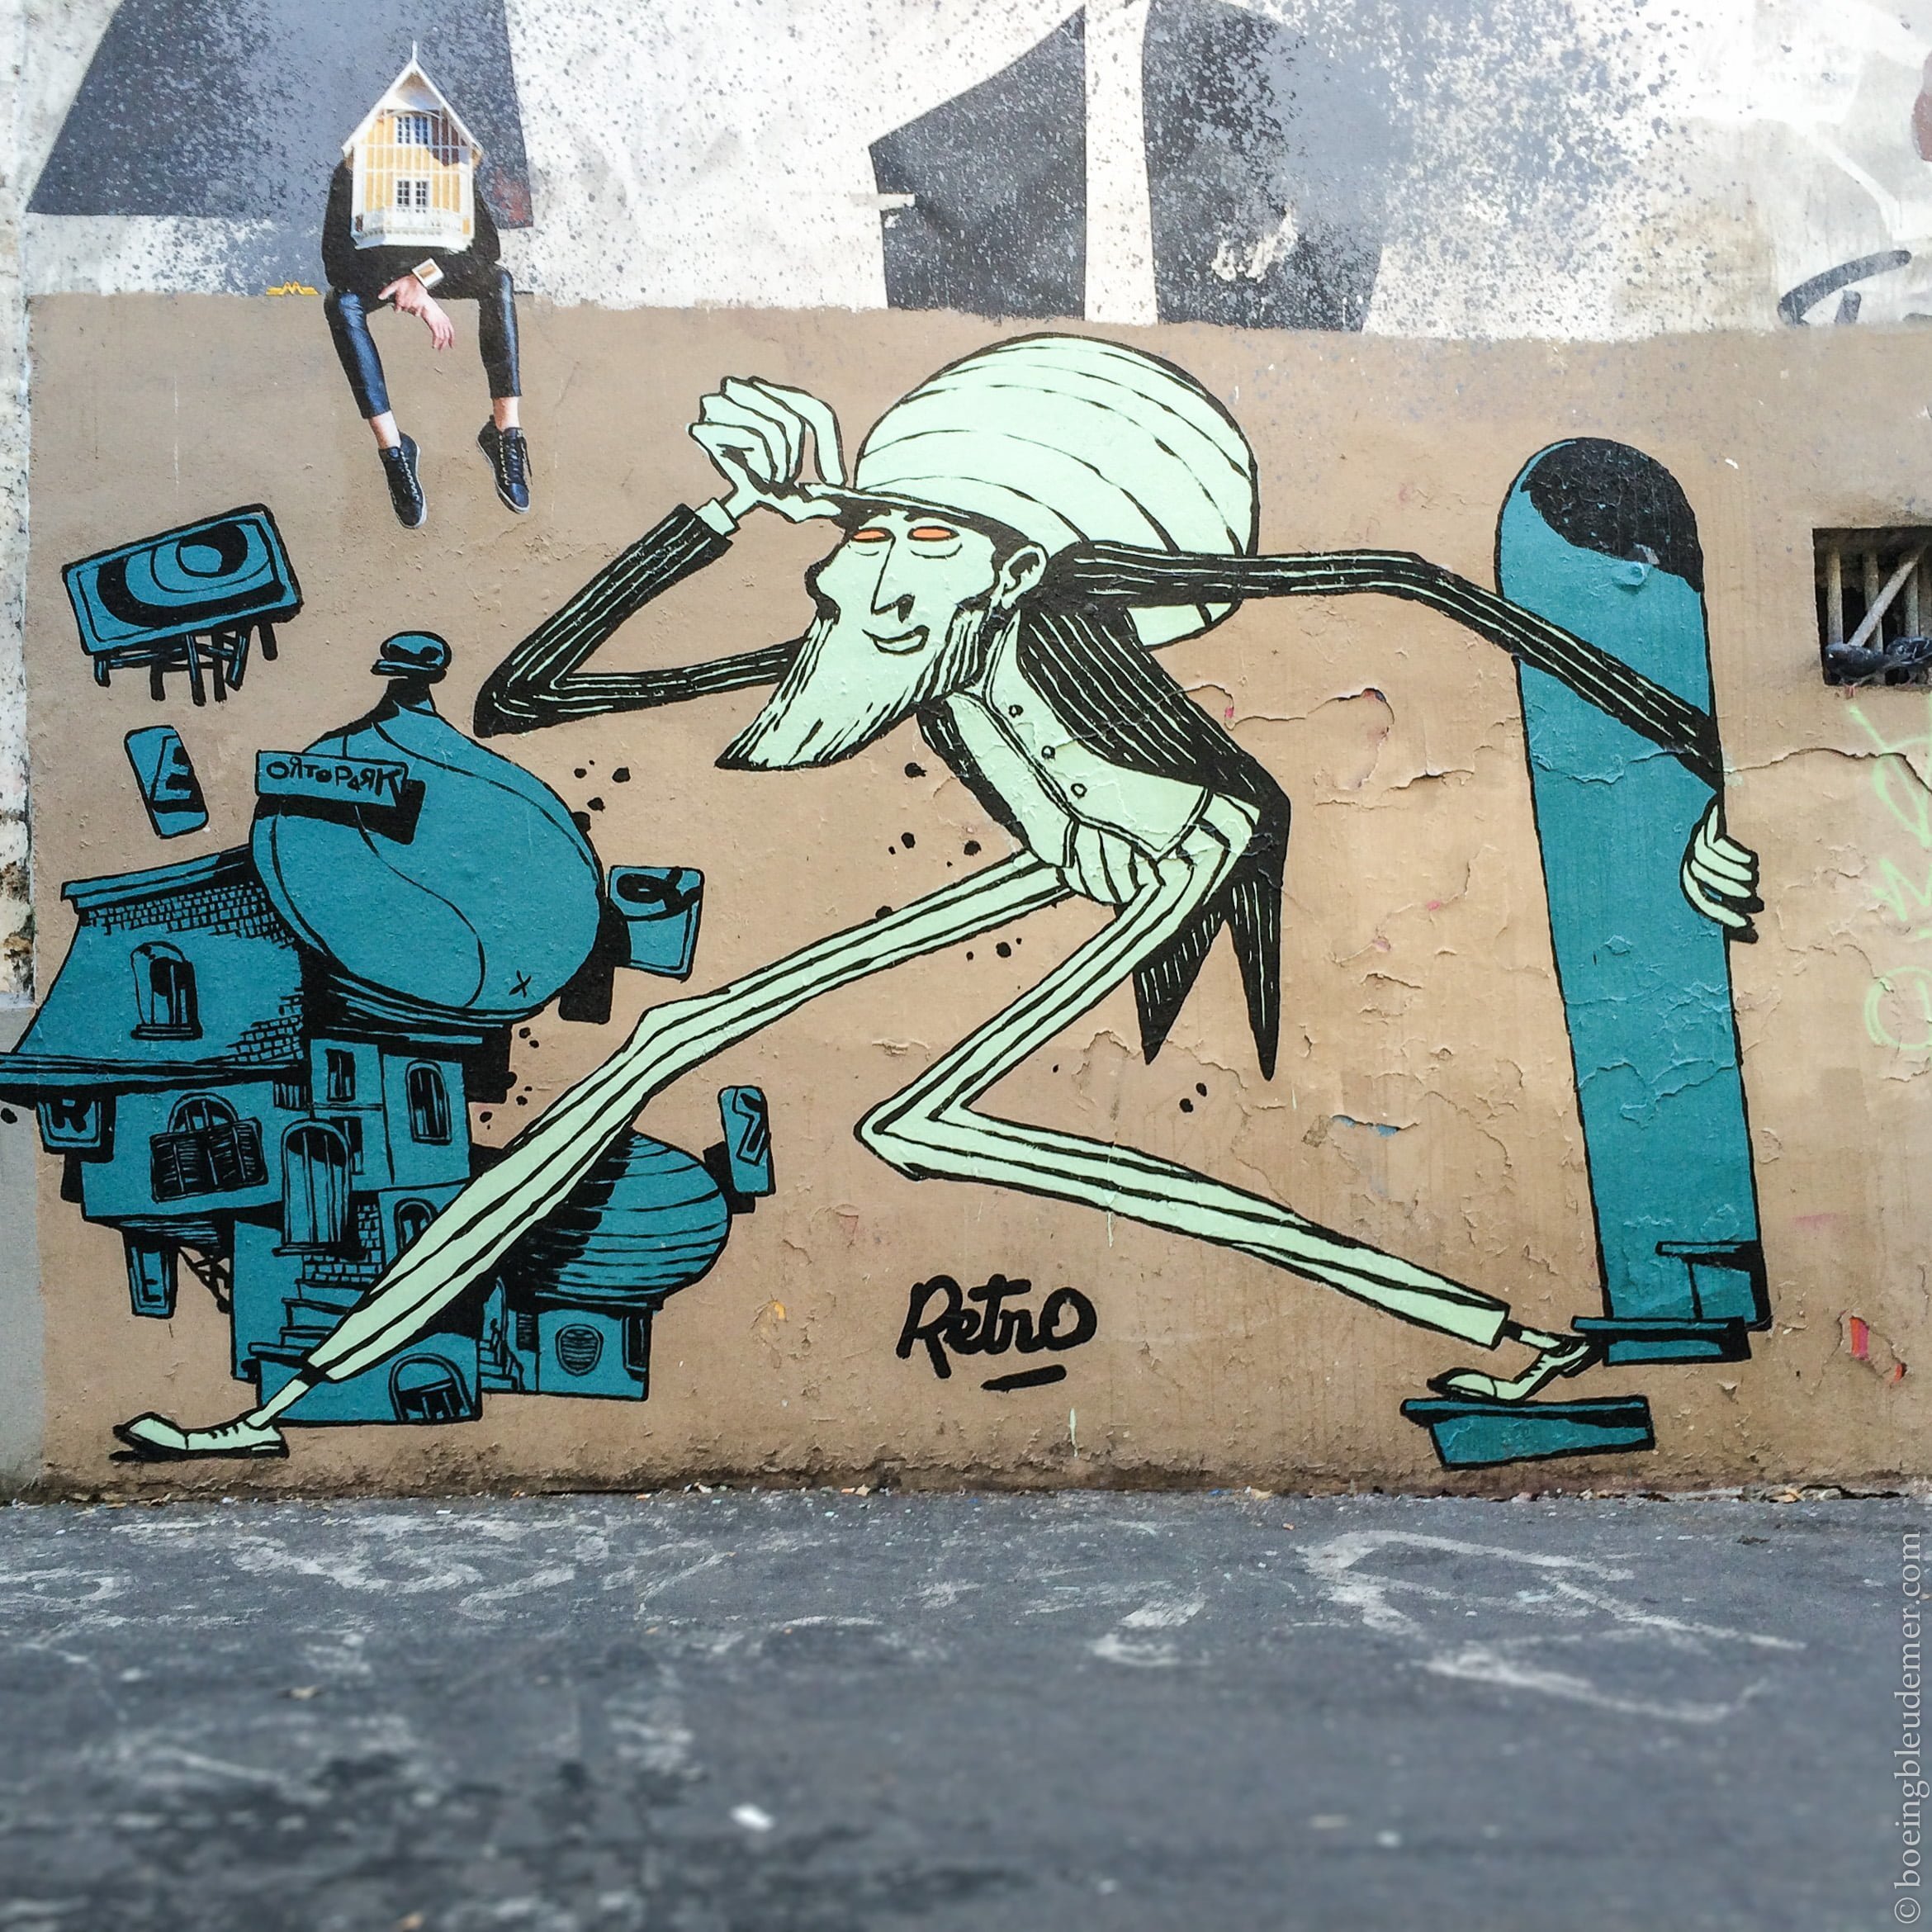 Streetart de Retro, Paris